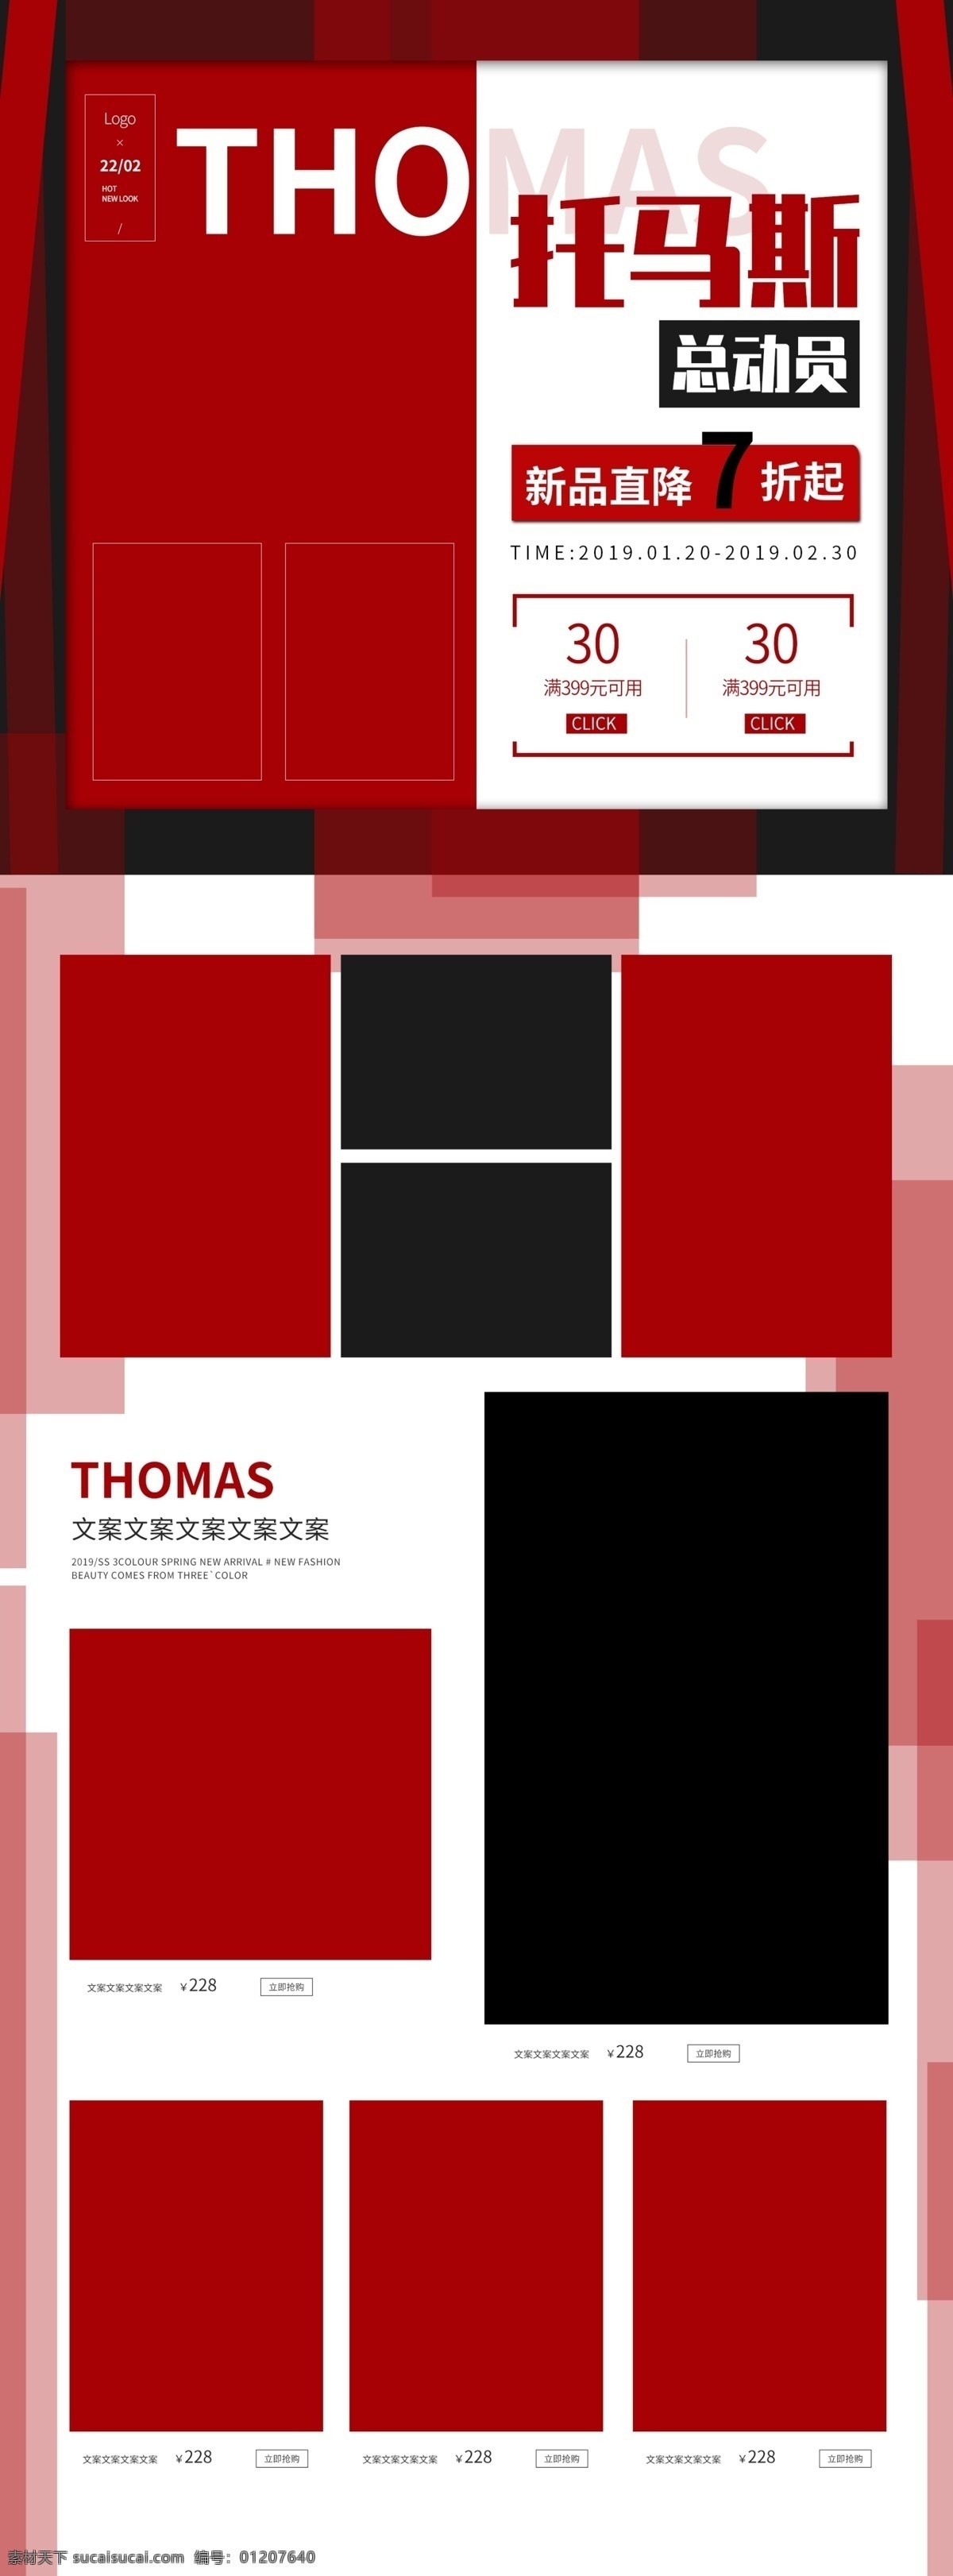 电商 淘宝 托马斯 总动员 黑 红色 简约 风 促销 首页 狂欢 多边形 托马斯总动员 托马斯盛典 黑红色 简约风